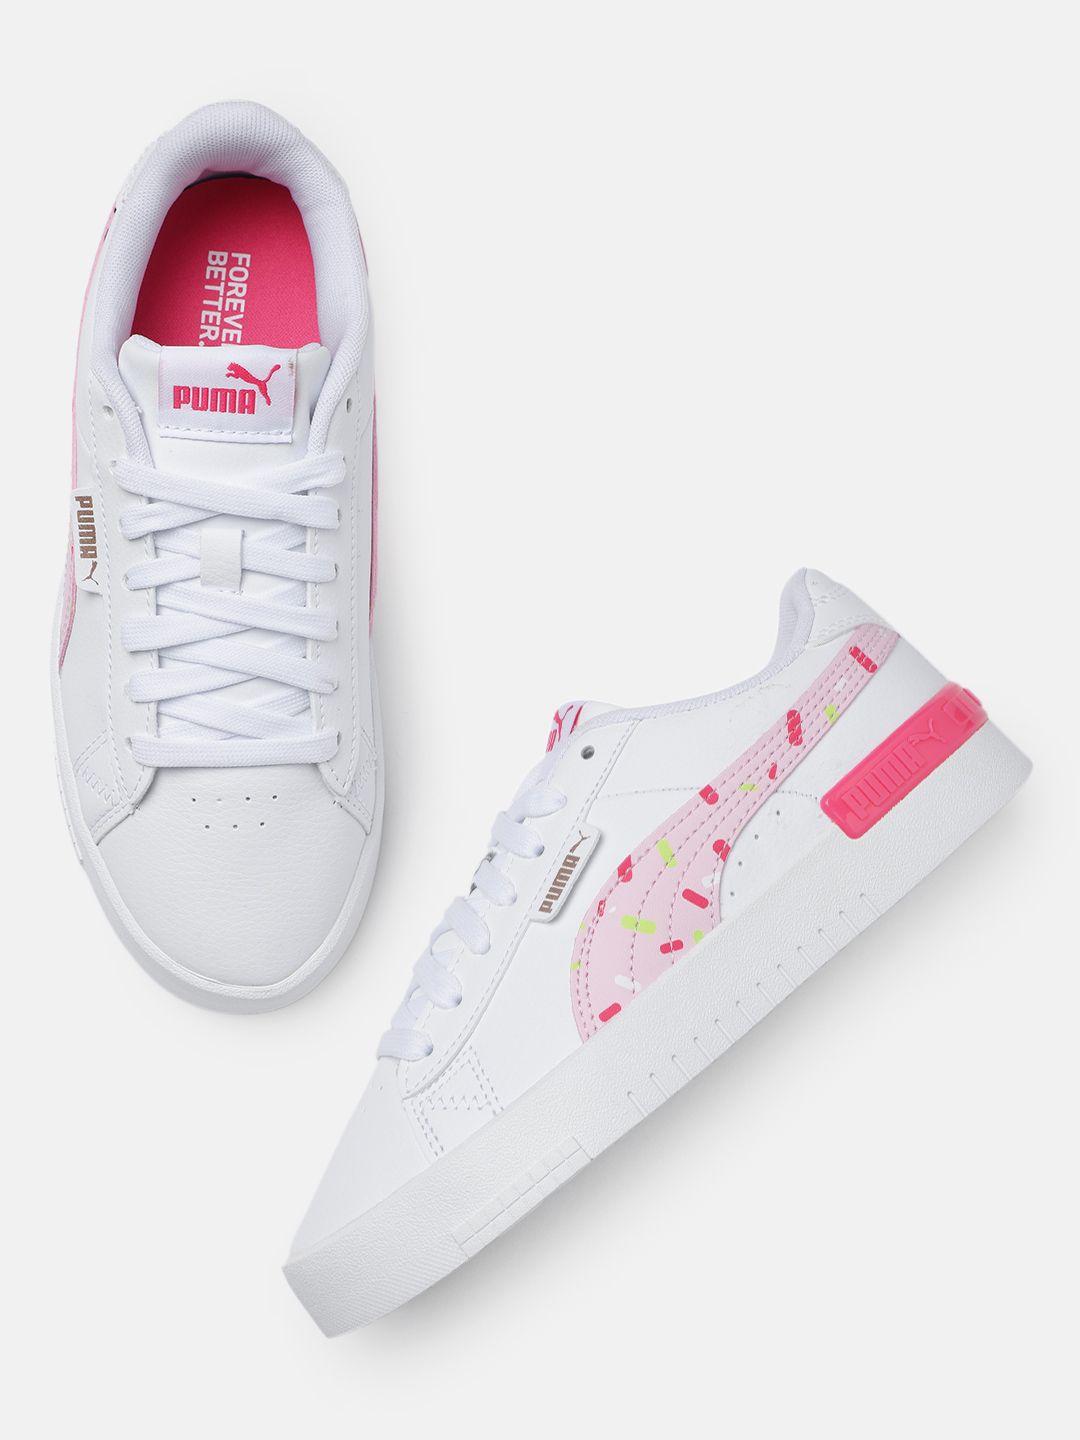 puma girls perforations jada crush regular sneakers with minimal print detail